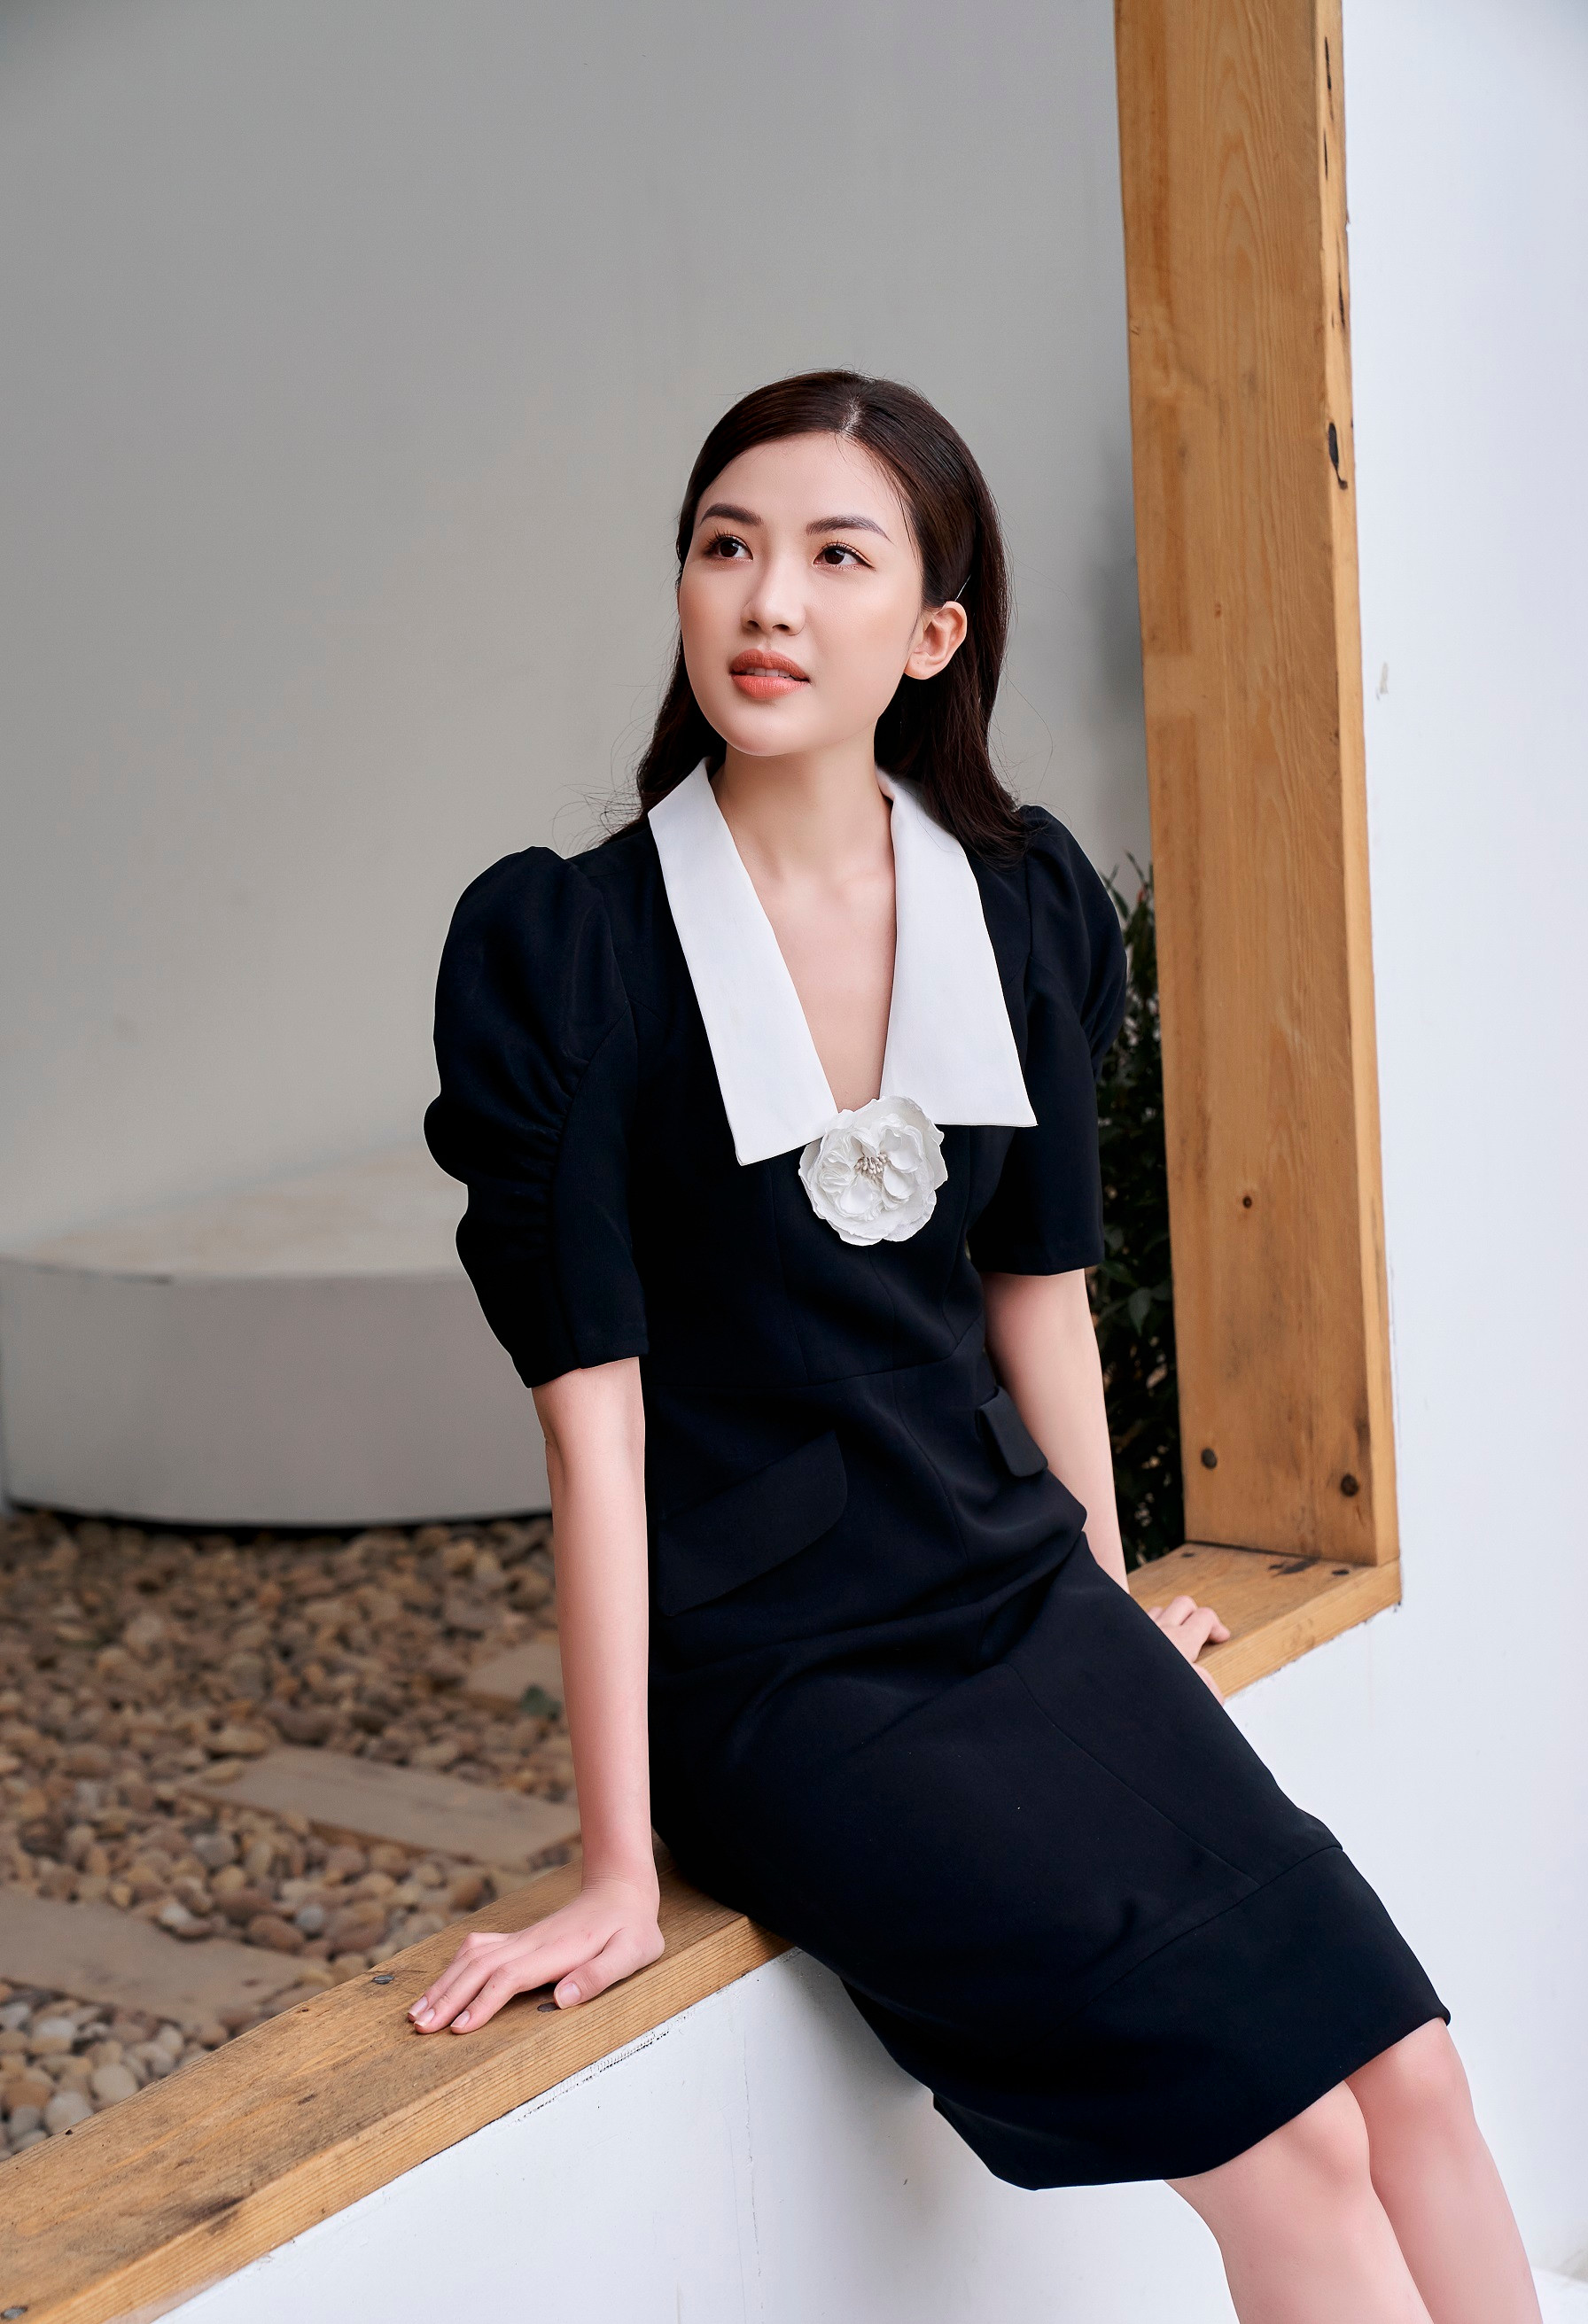 Diễn viên Lương Thanh cuốn hút trong trang phục đen - trắng